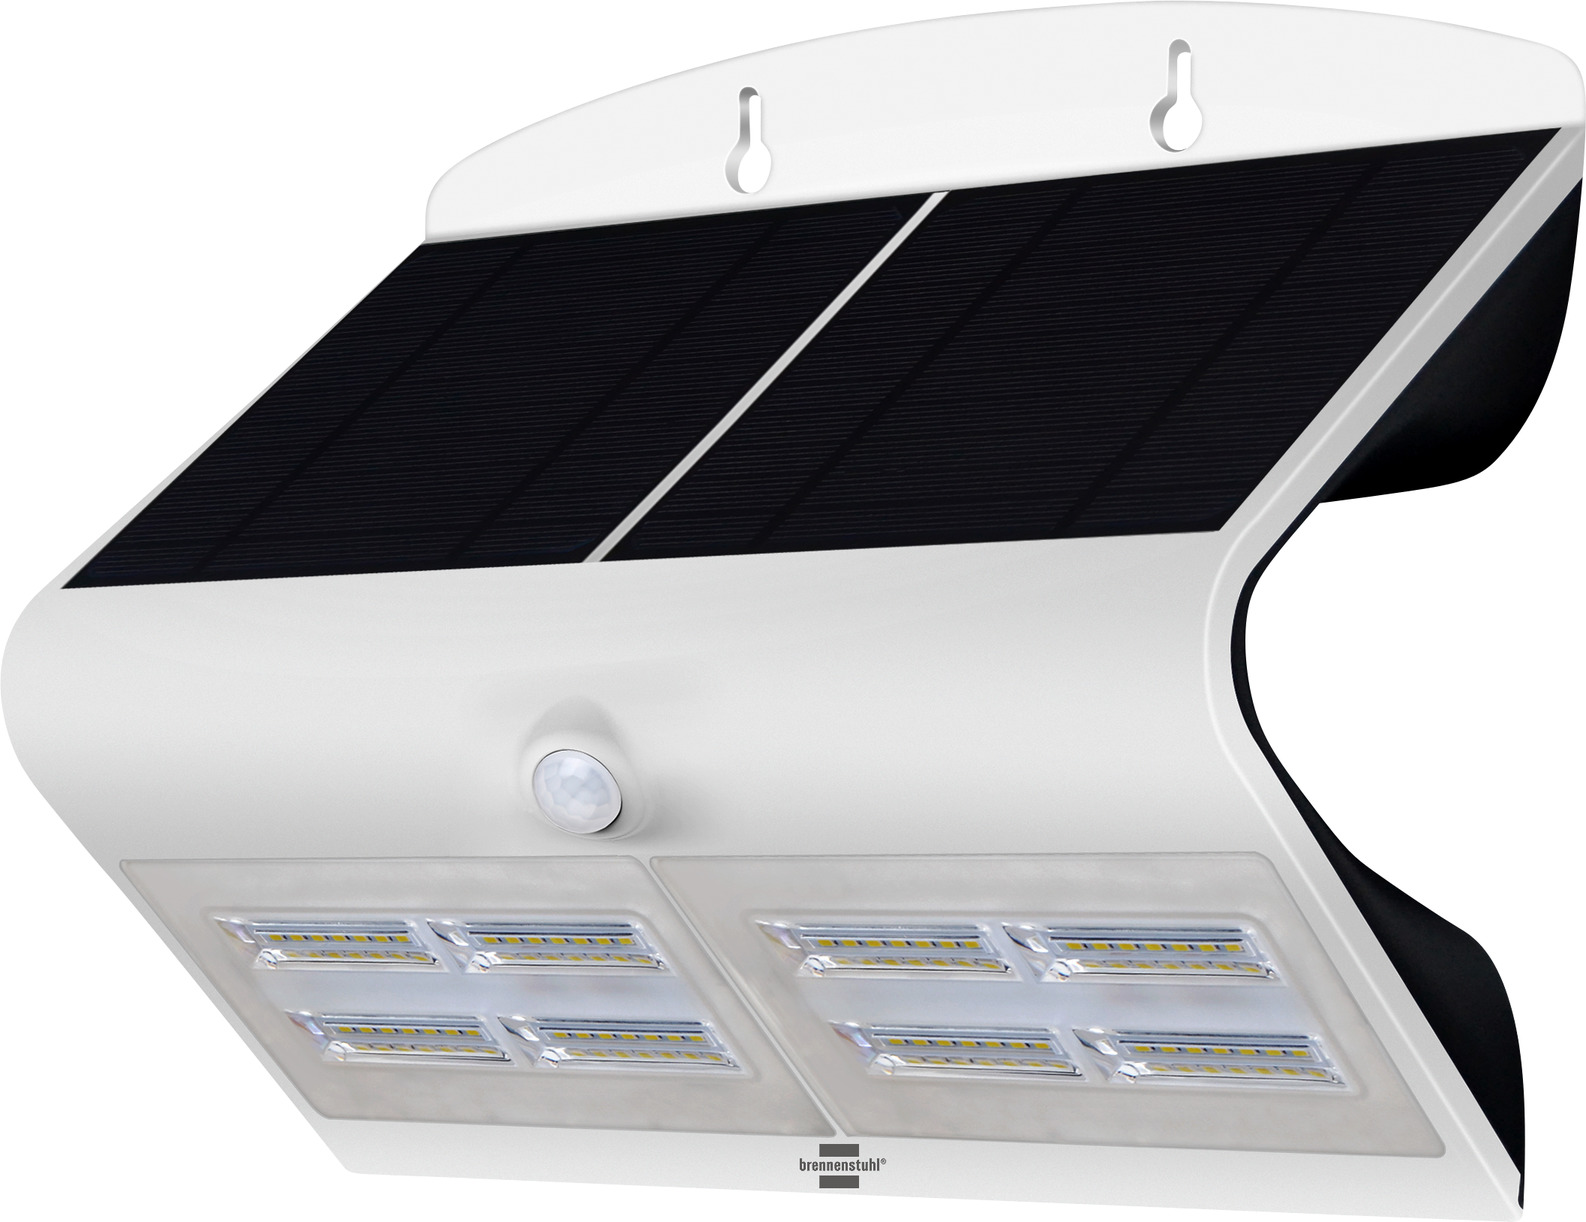 LED Solarwandleuchte mit Sensor SOL WAVE 800, mit Dämmerungssensor und  Bewegungsmelder, IP65, 6,8W, 800lm, weiss/schwarz | brennenstuhl®